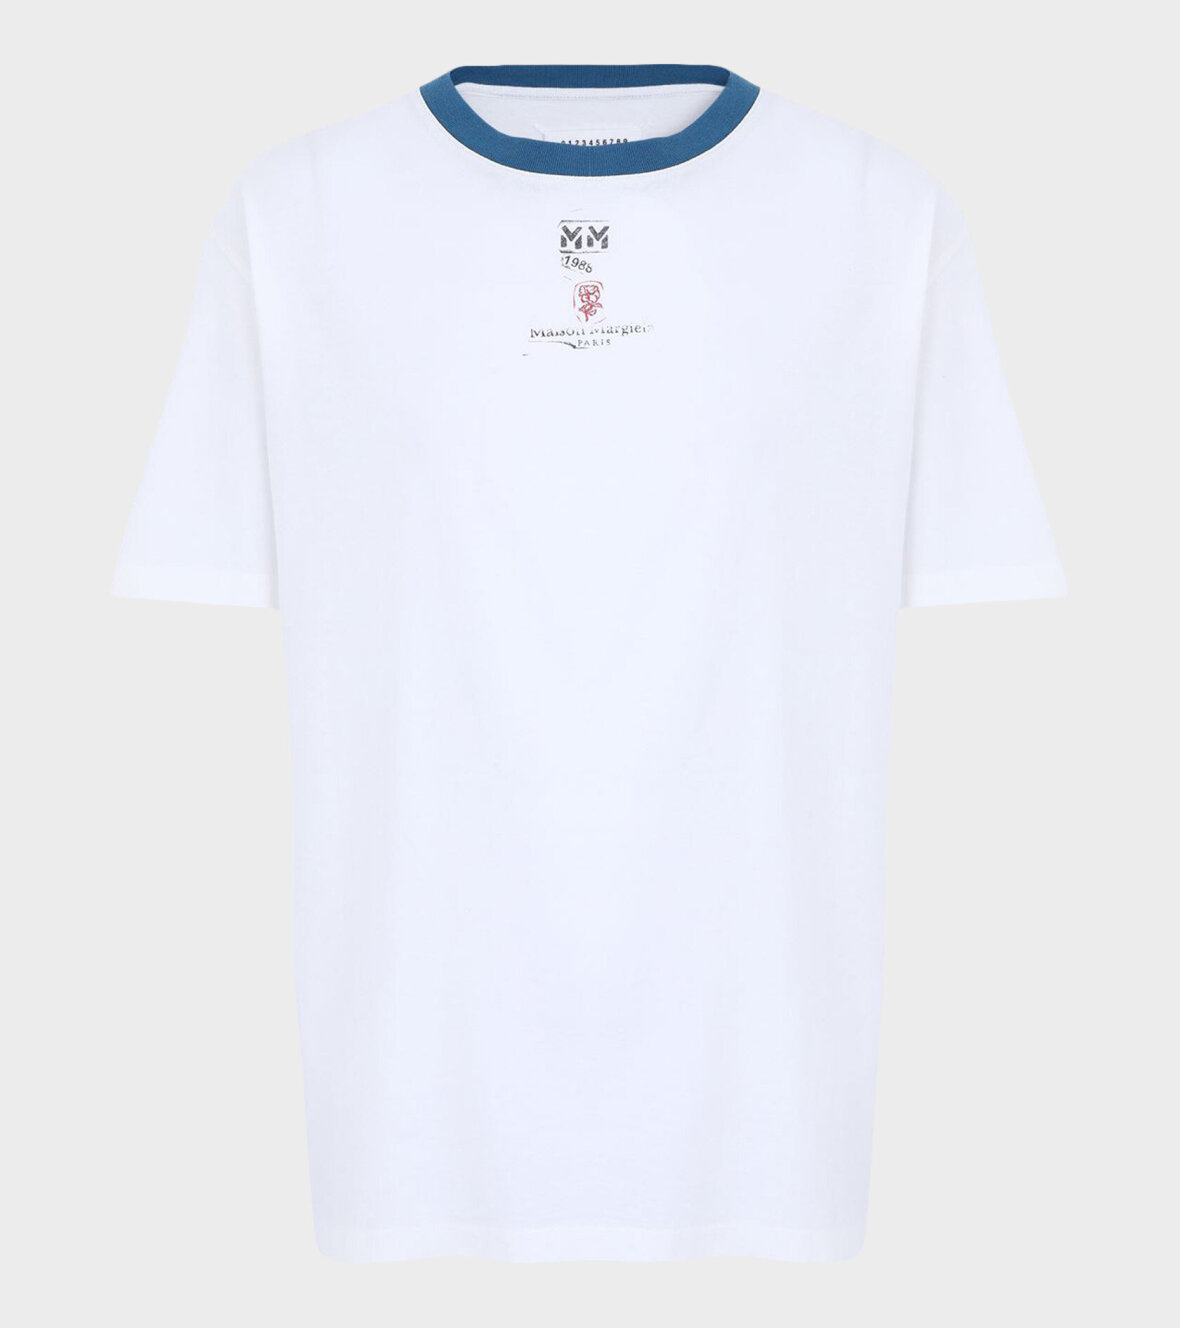 Kanon mytologi eventyr dr. Adams - Maison Margiela MM 1988 T-shirt White/Blue